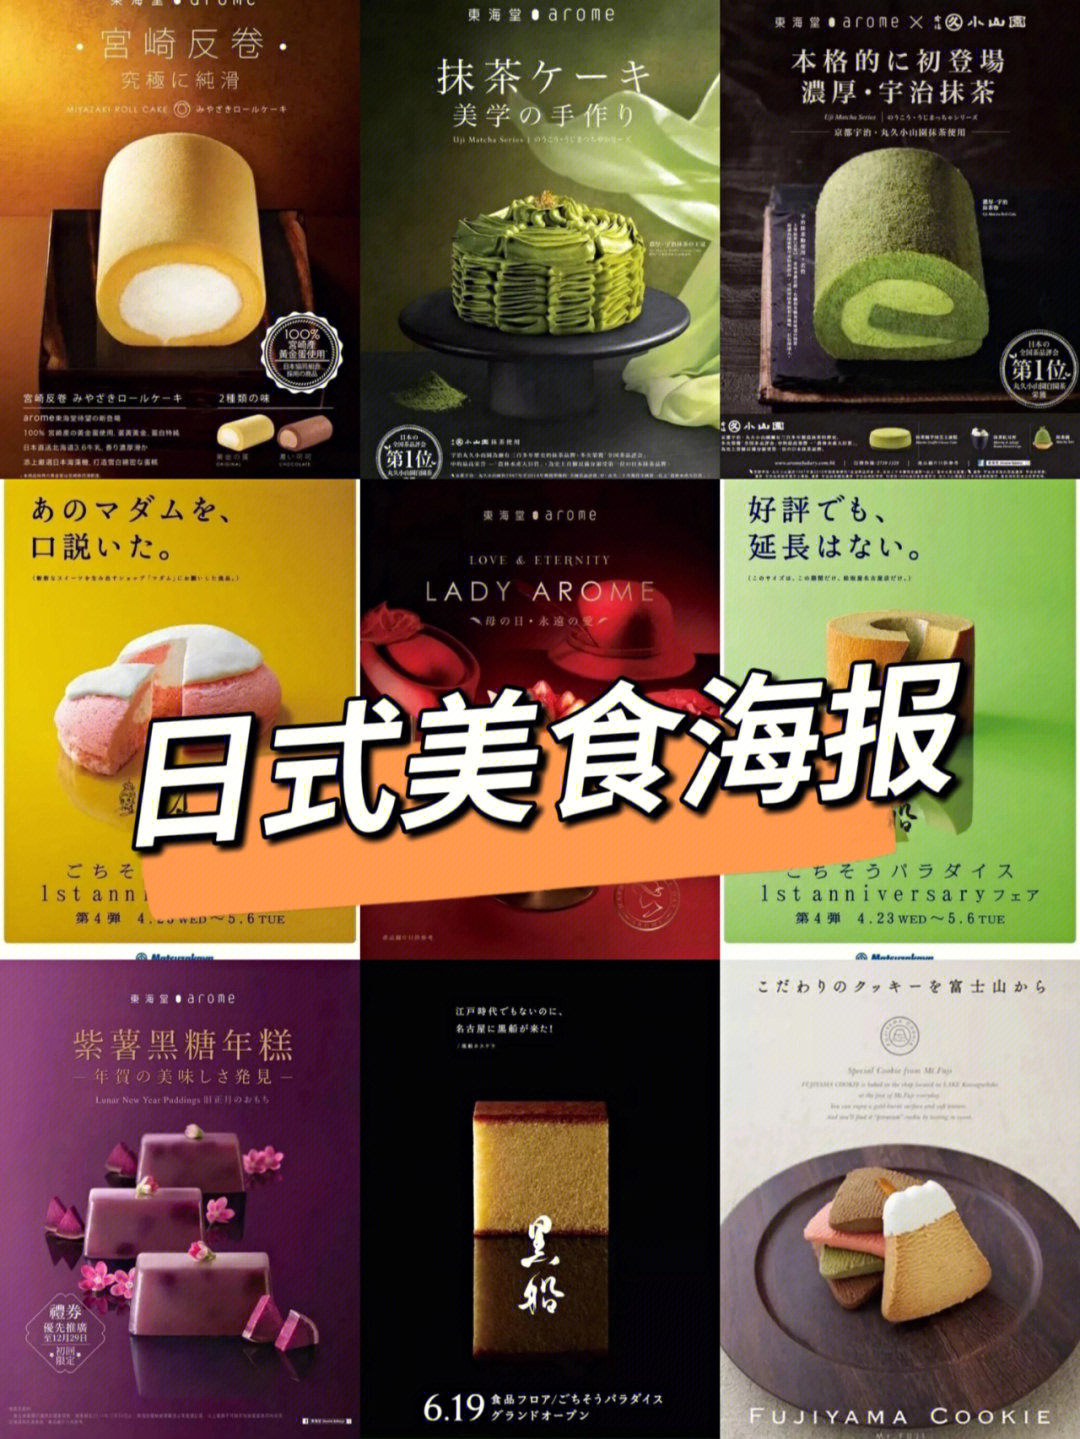 日本海报设计中讲究留白的日式美学,特别是美食海报,注重食物的位置